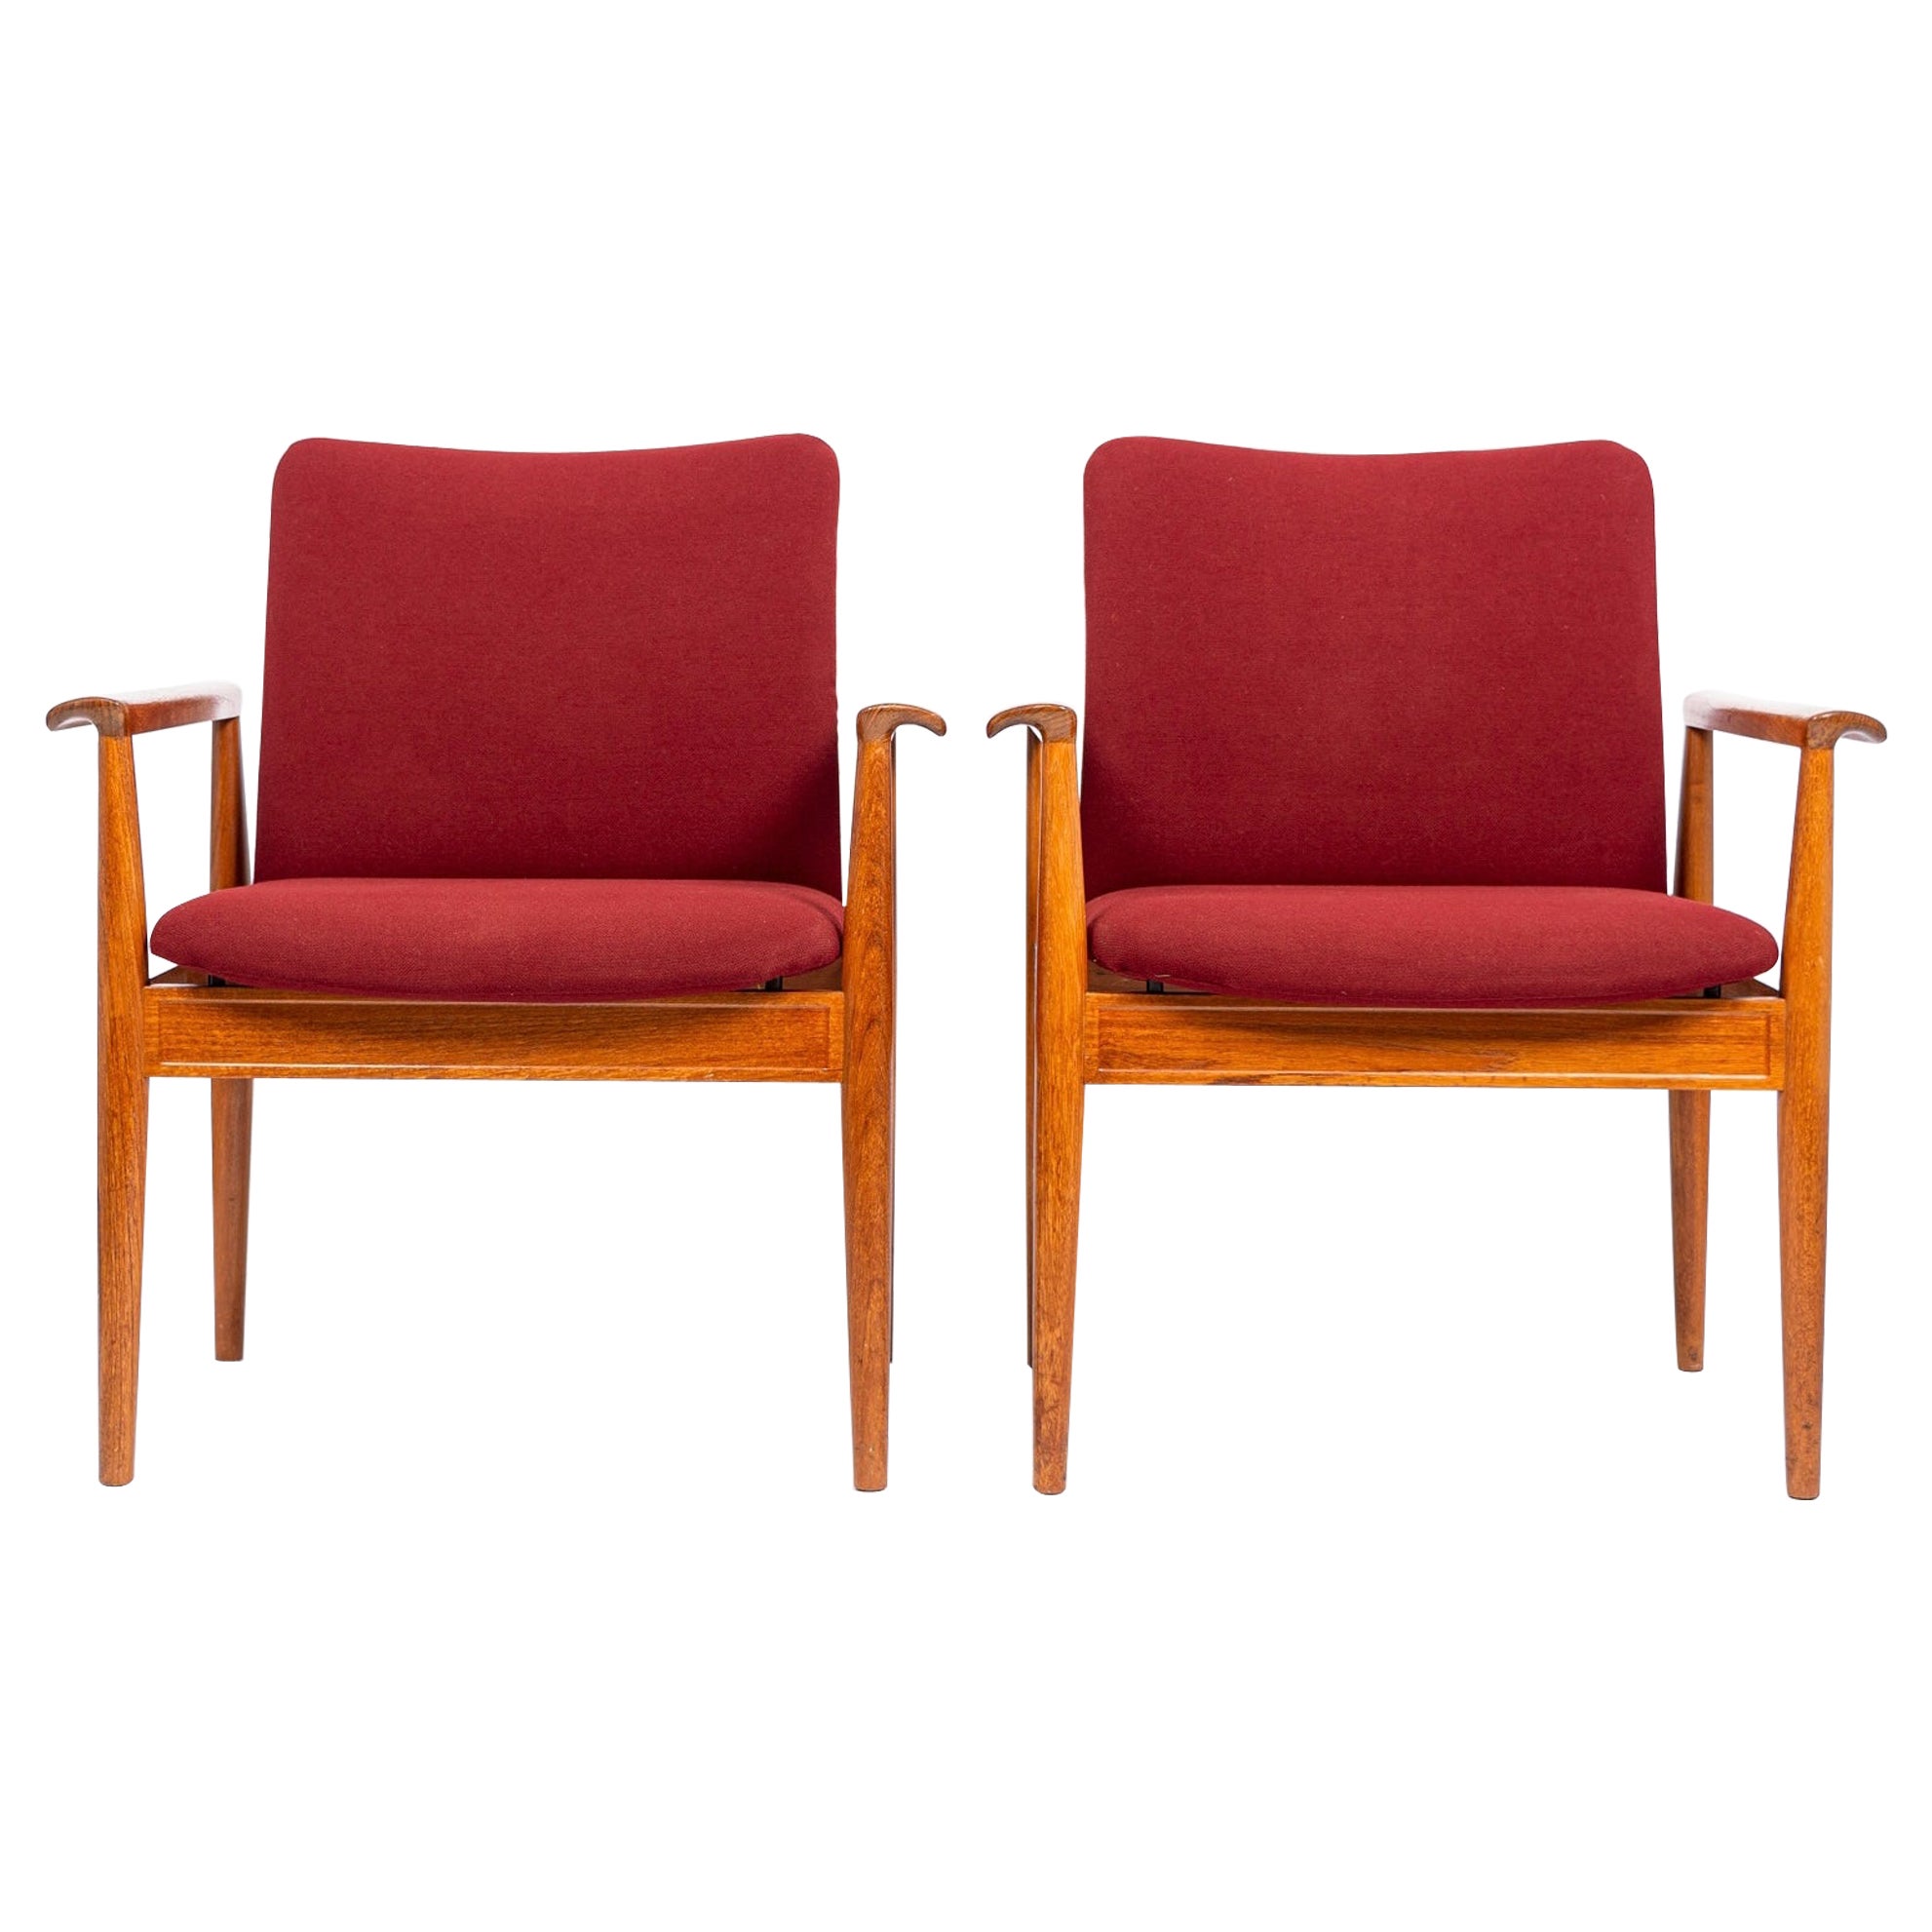 Mid Century Danish Red Diplomat Chairs by Finn Juhl for France & Daverkosen For Sale